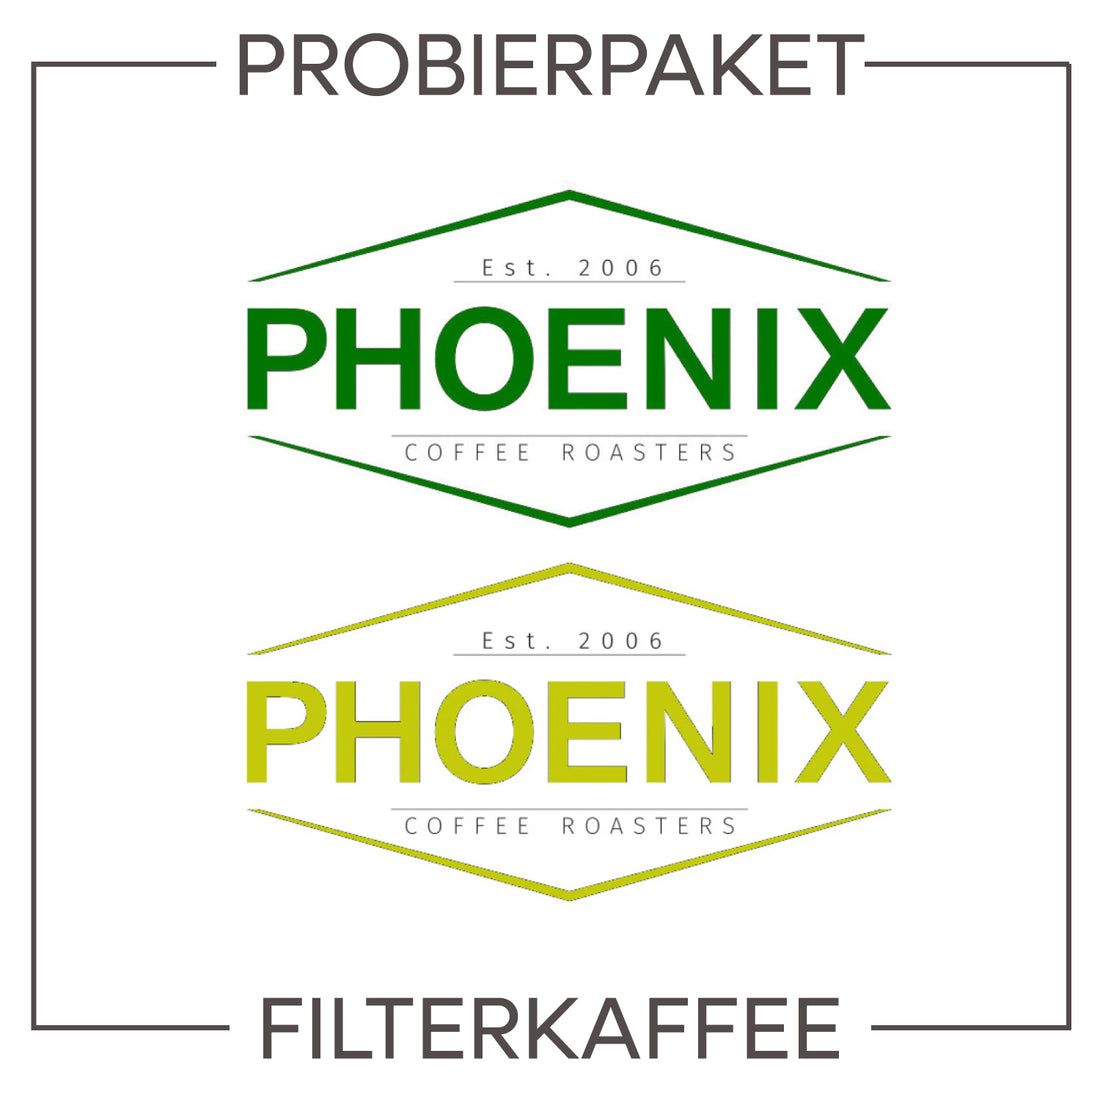 probierpaket-filterkaffee-phoenix